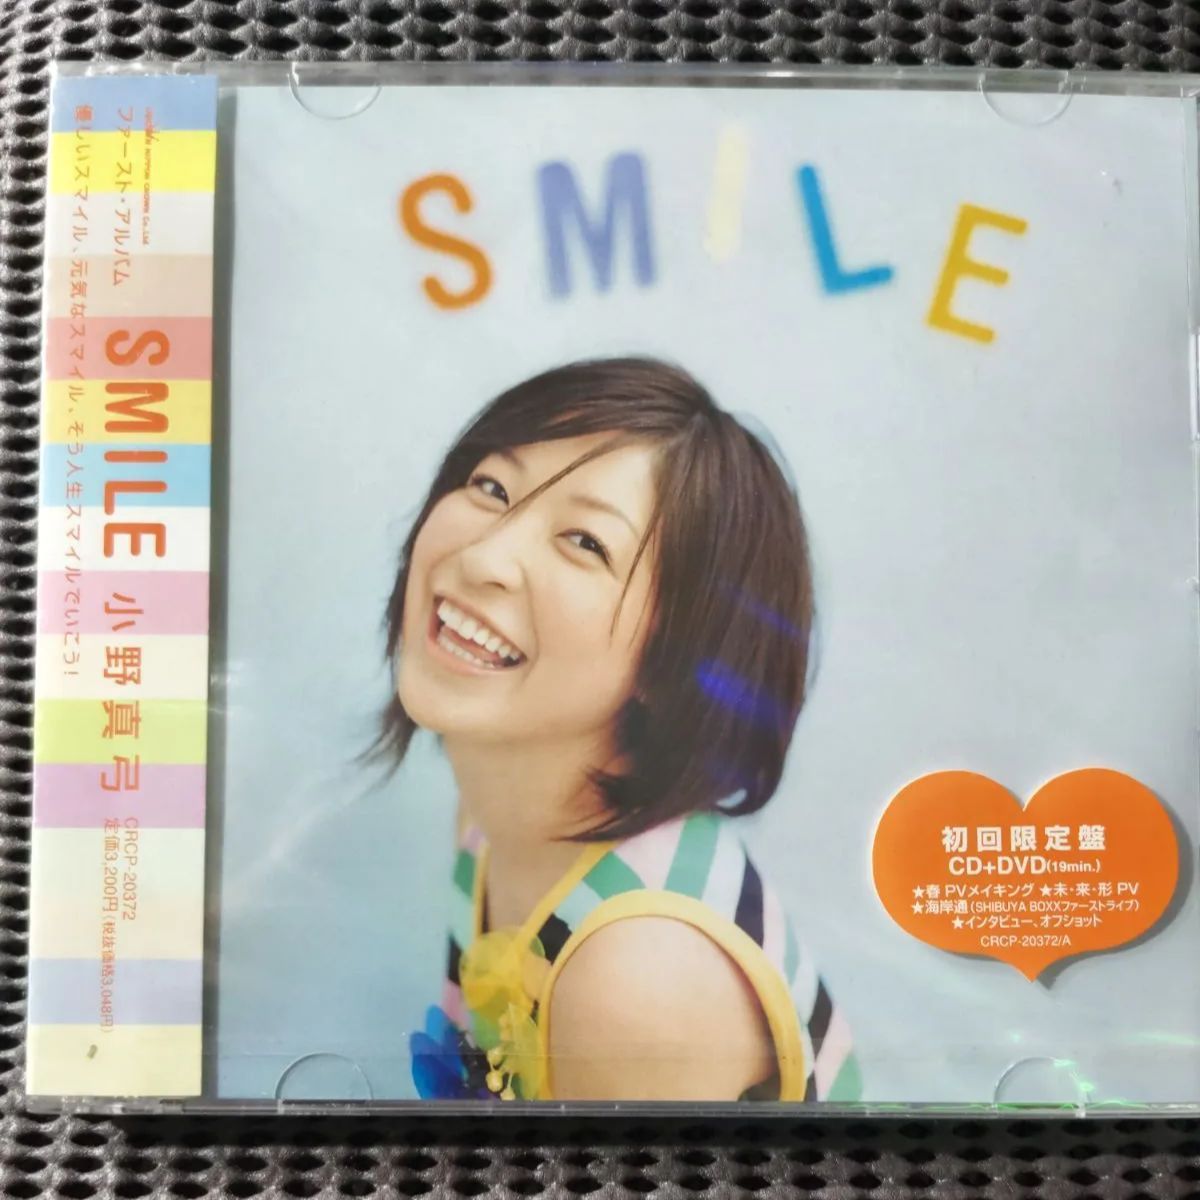 新品・未開封品😀「SMILE」 【初回限定盤CD+DVD】小野真弓